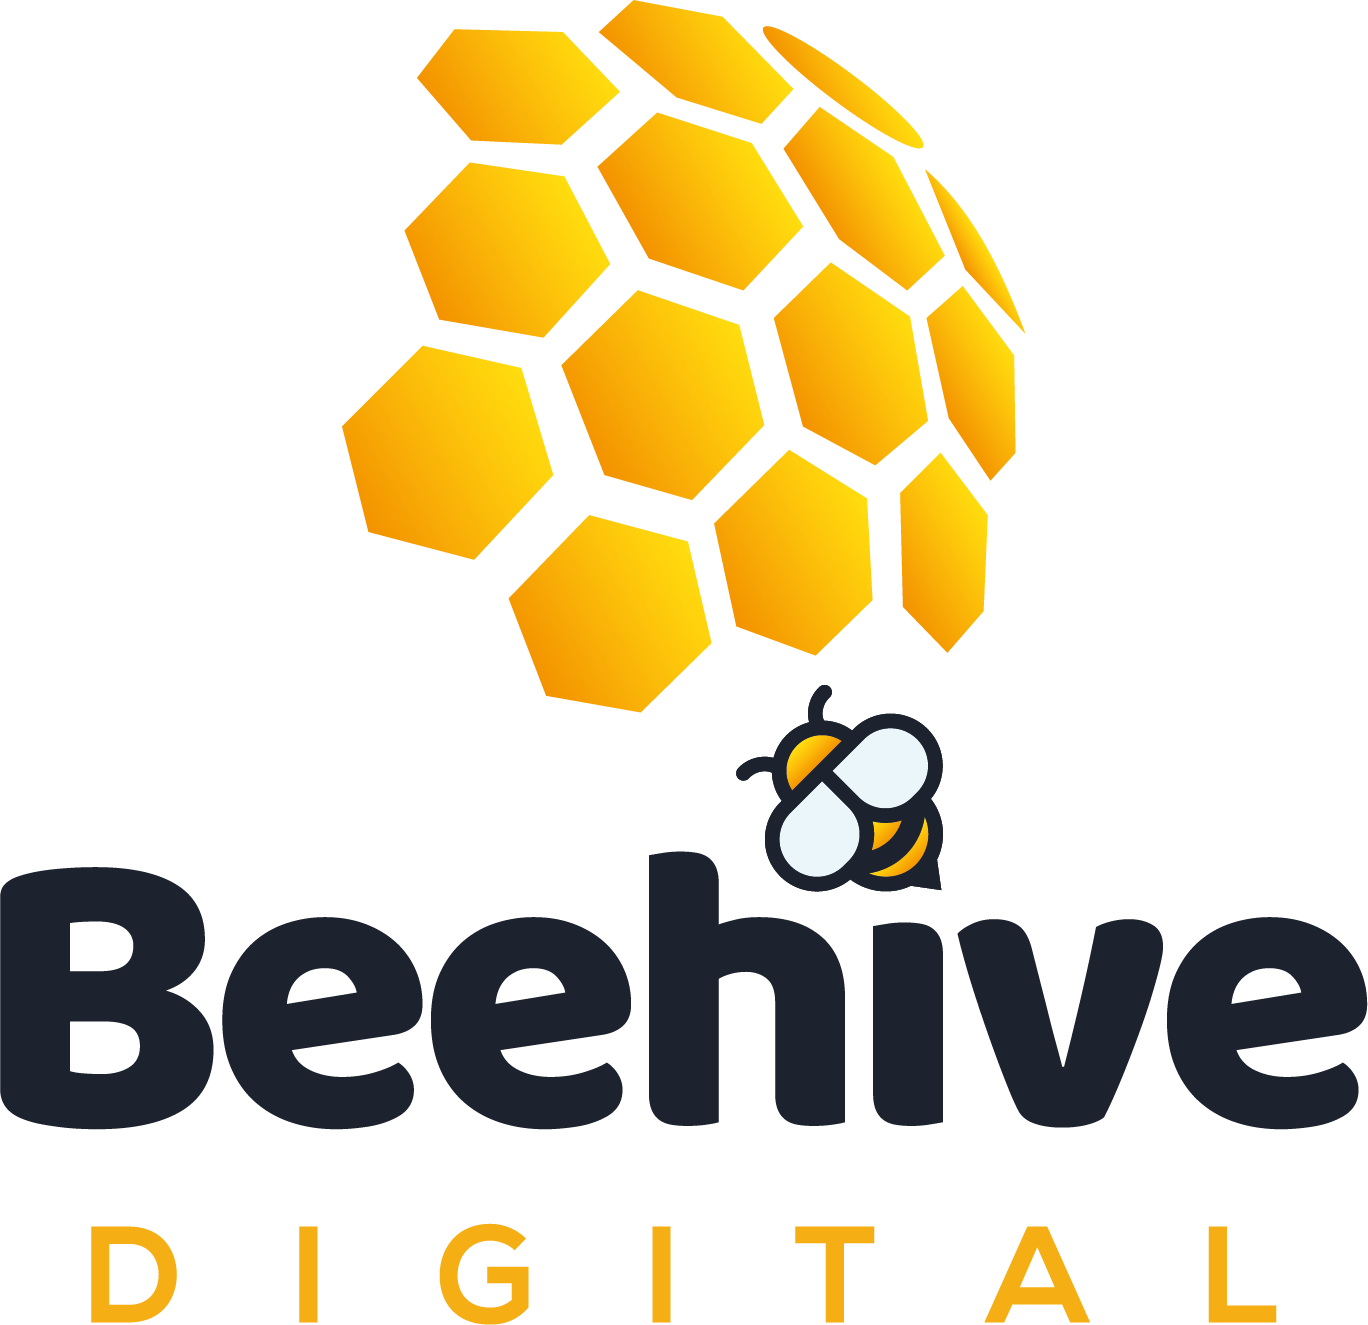 beehive digital logo final - Beehive Digital